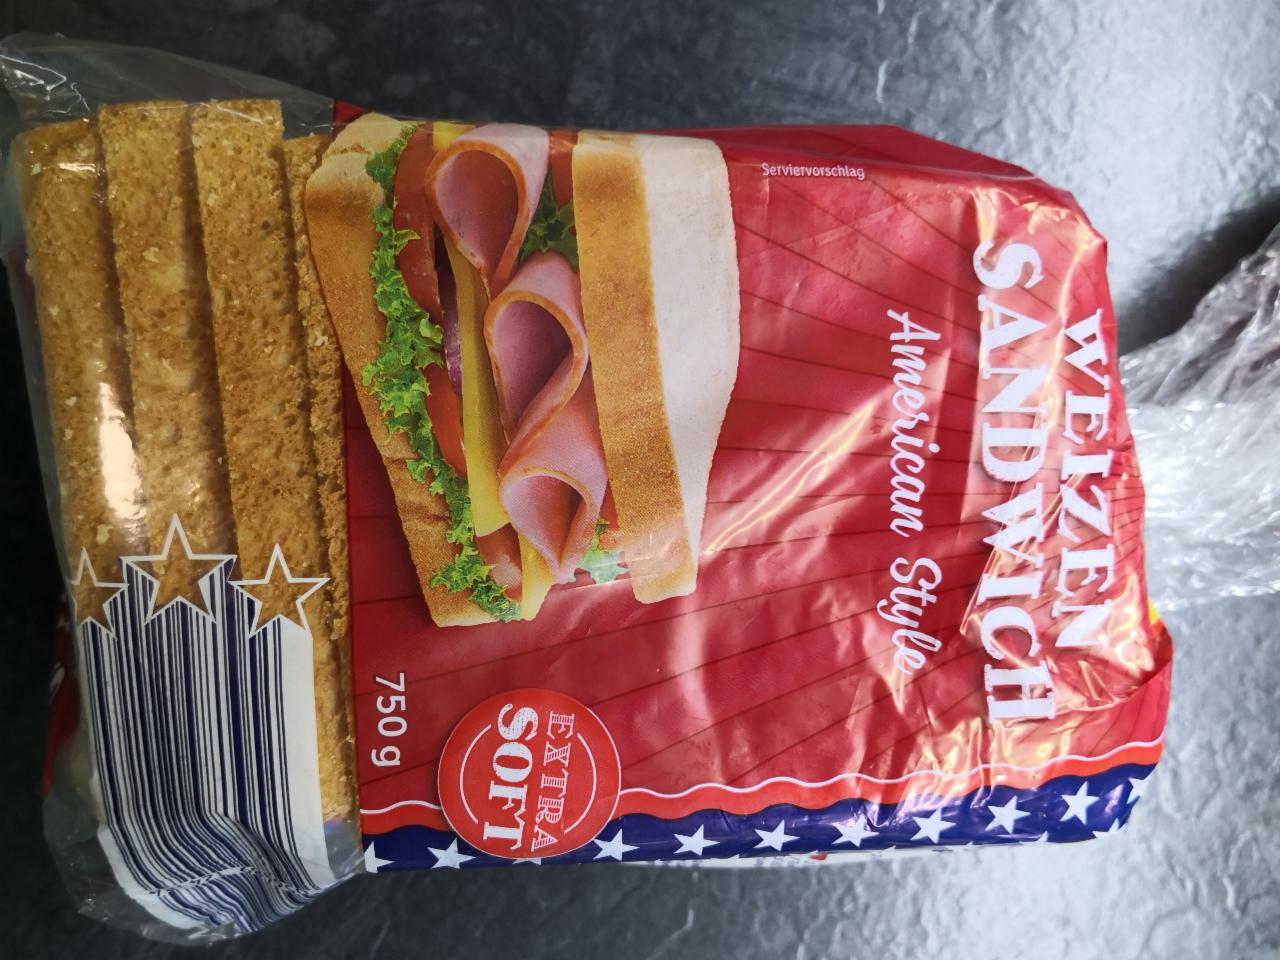 Fotografie - Weizen Sandwich American style Lidl AT